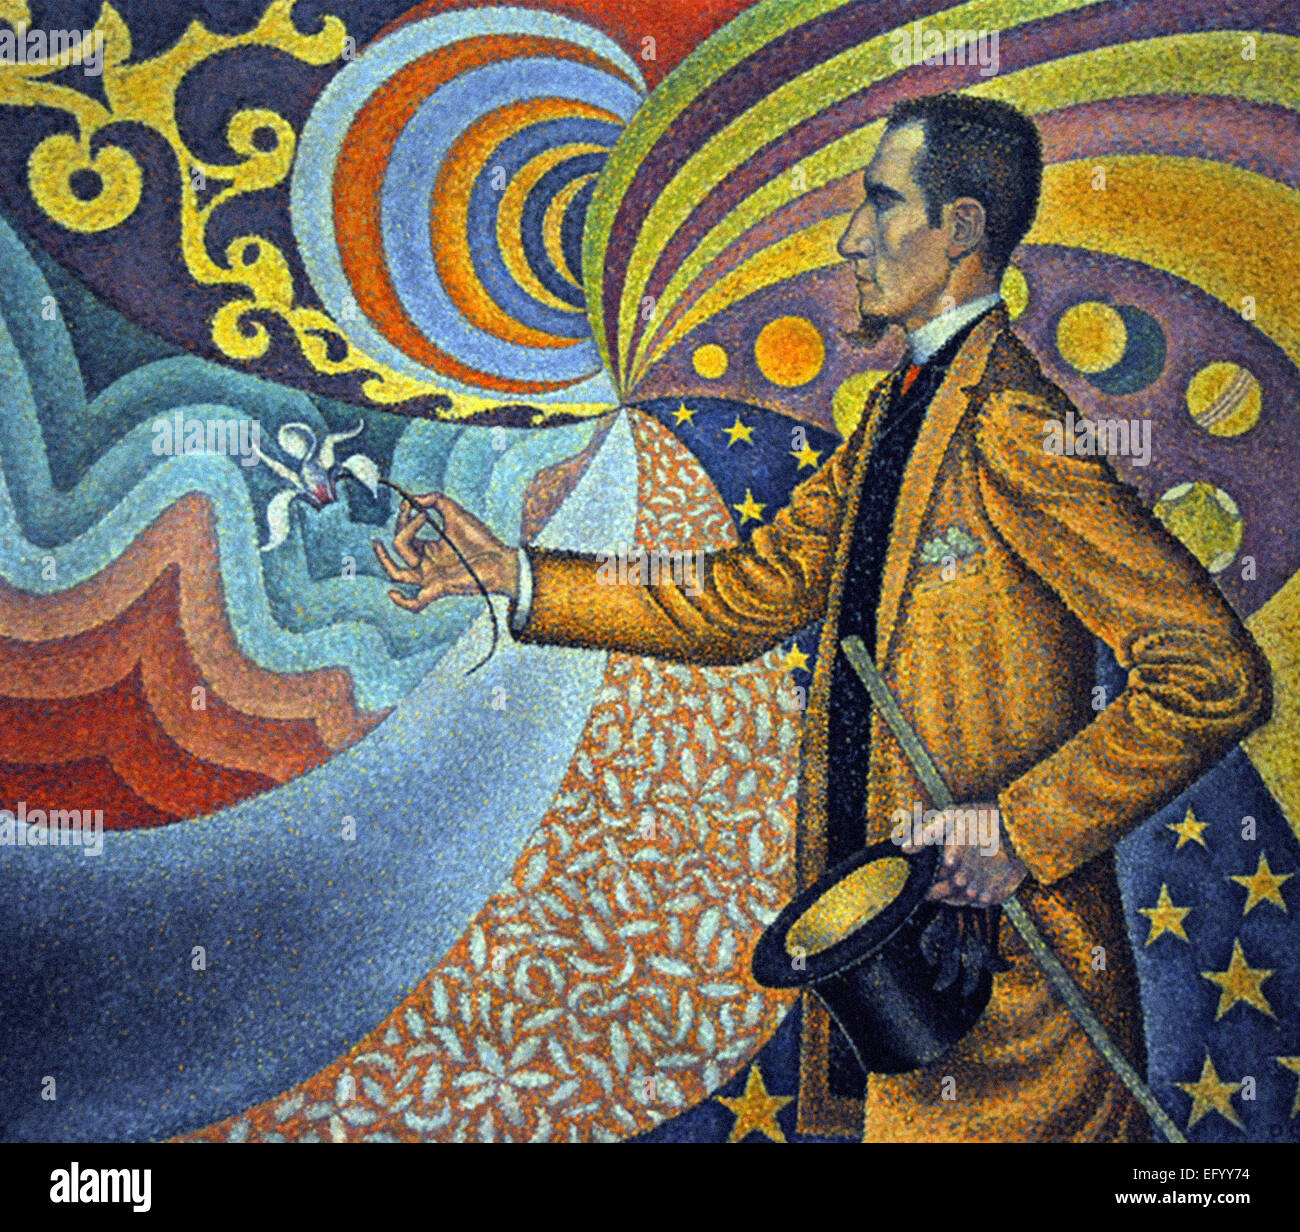 Paul Signac Opus 217. Contro lo smalto di una ritmica di sfondo con Beats e gli angoli, toni e sfumature cromatiche, Ritratto di M. Félix Fénéon nel 1890 Foto Stock